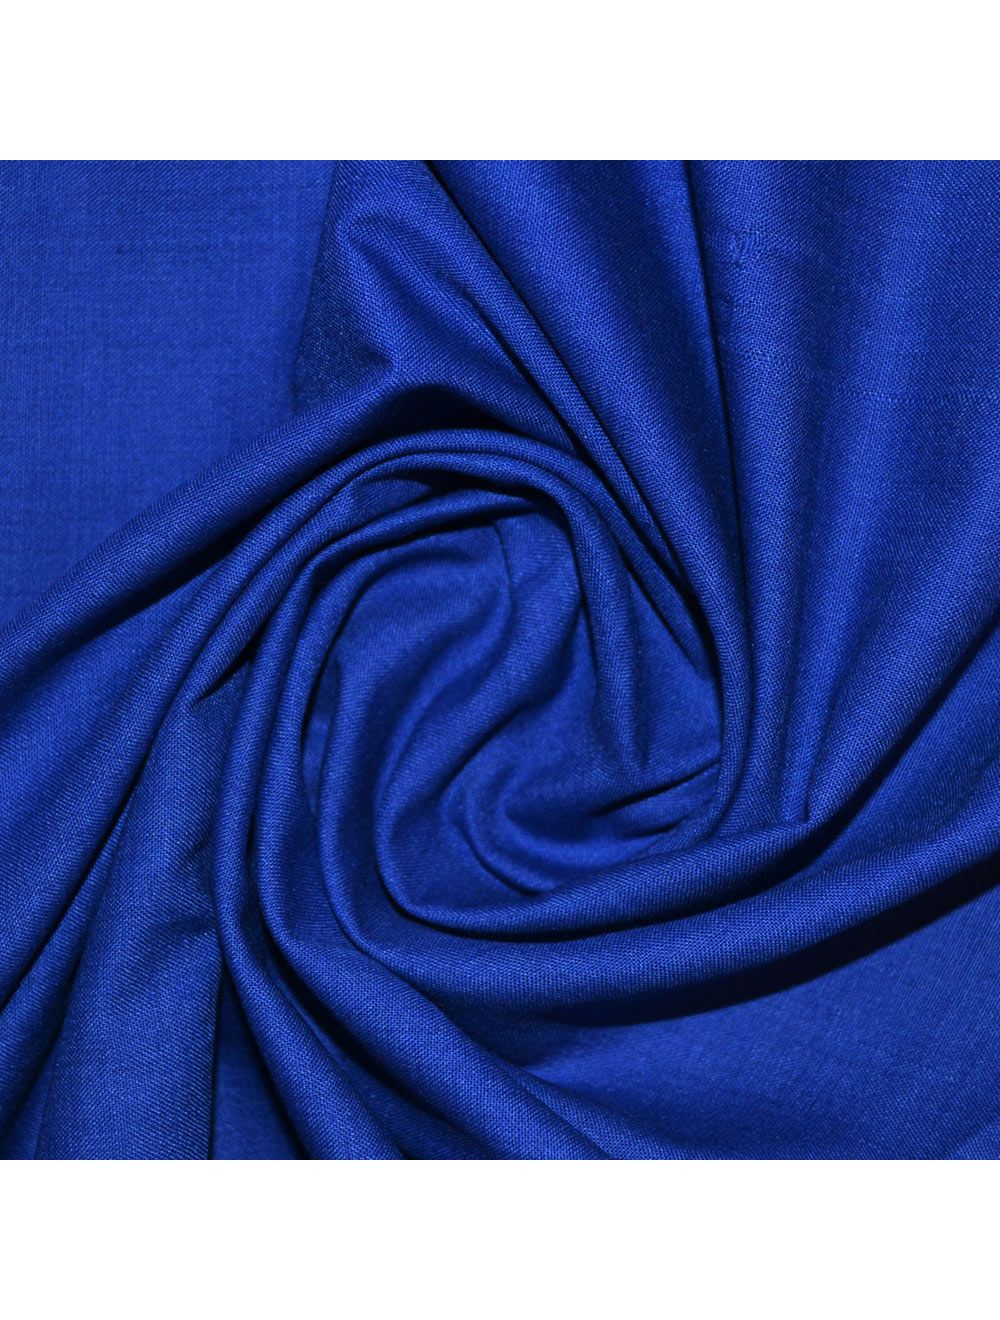 Royal Blue Sheeting Fabric | Sheeting Fabrics | Calico Laine